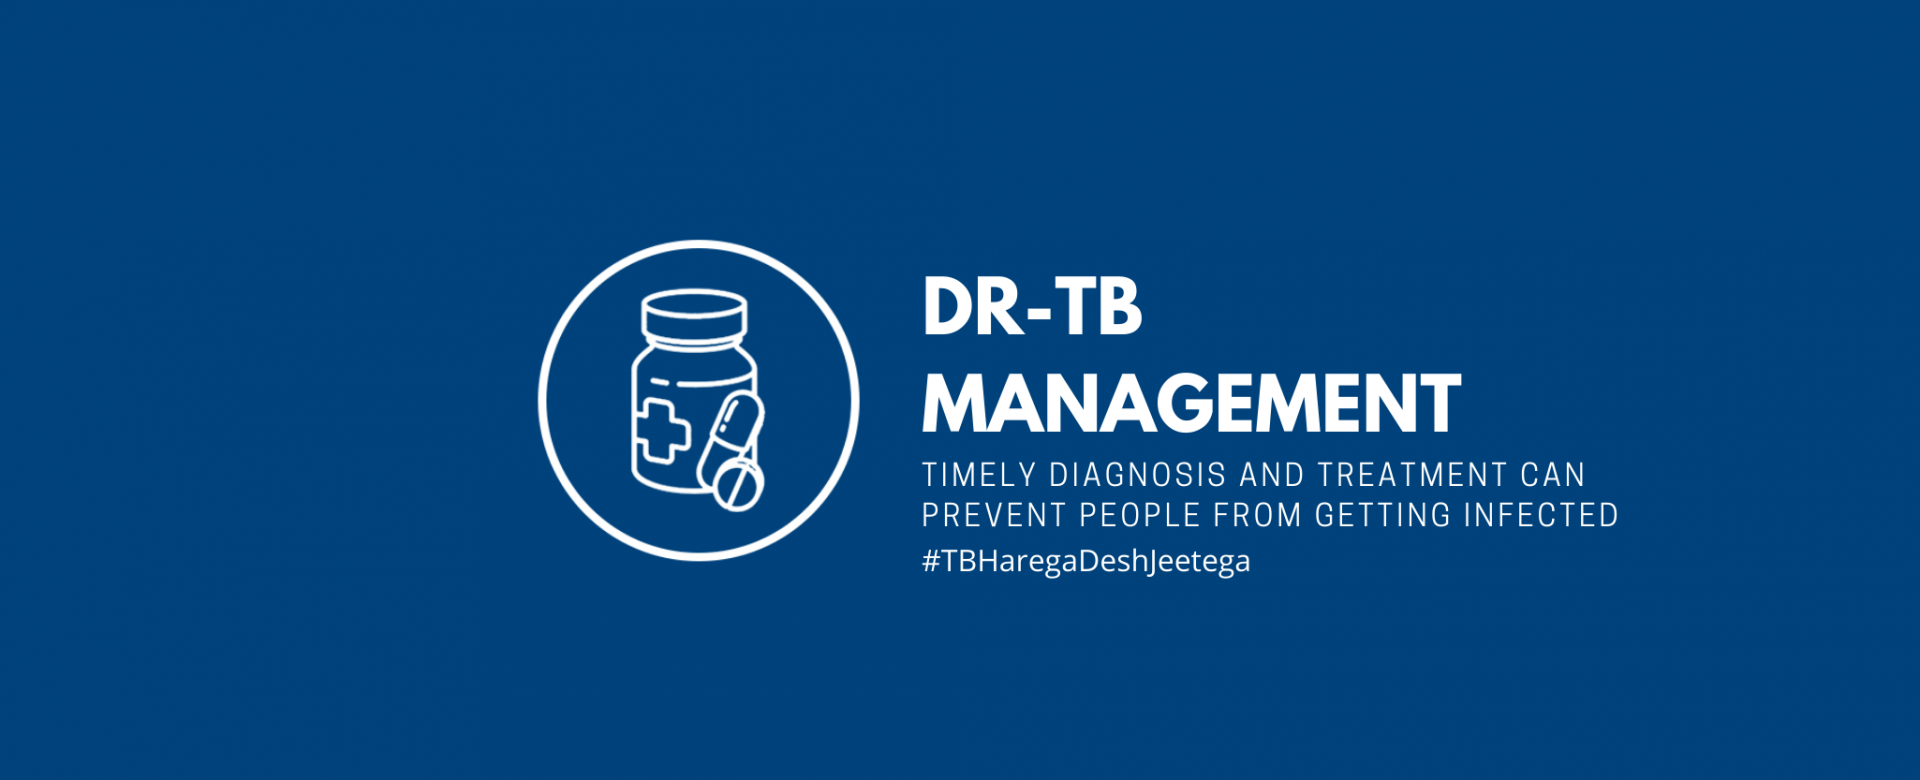 DR-TB Management